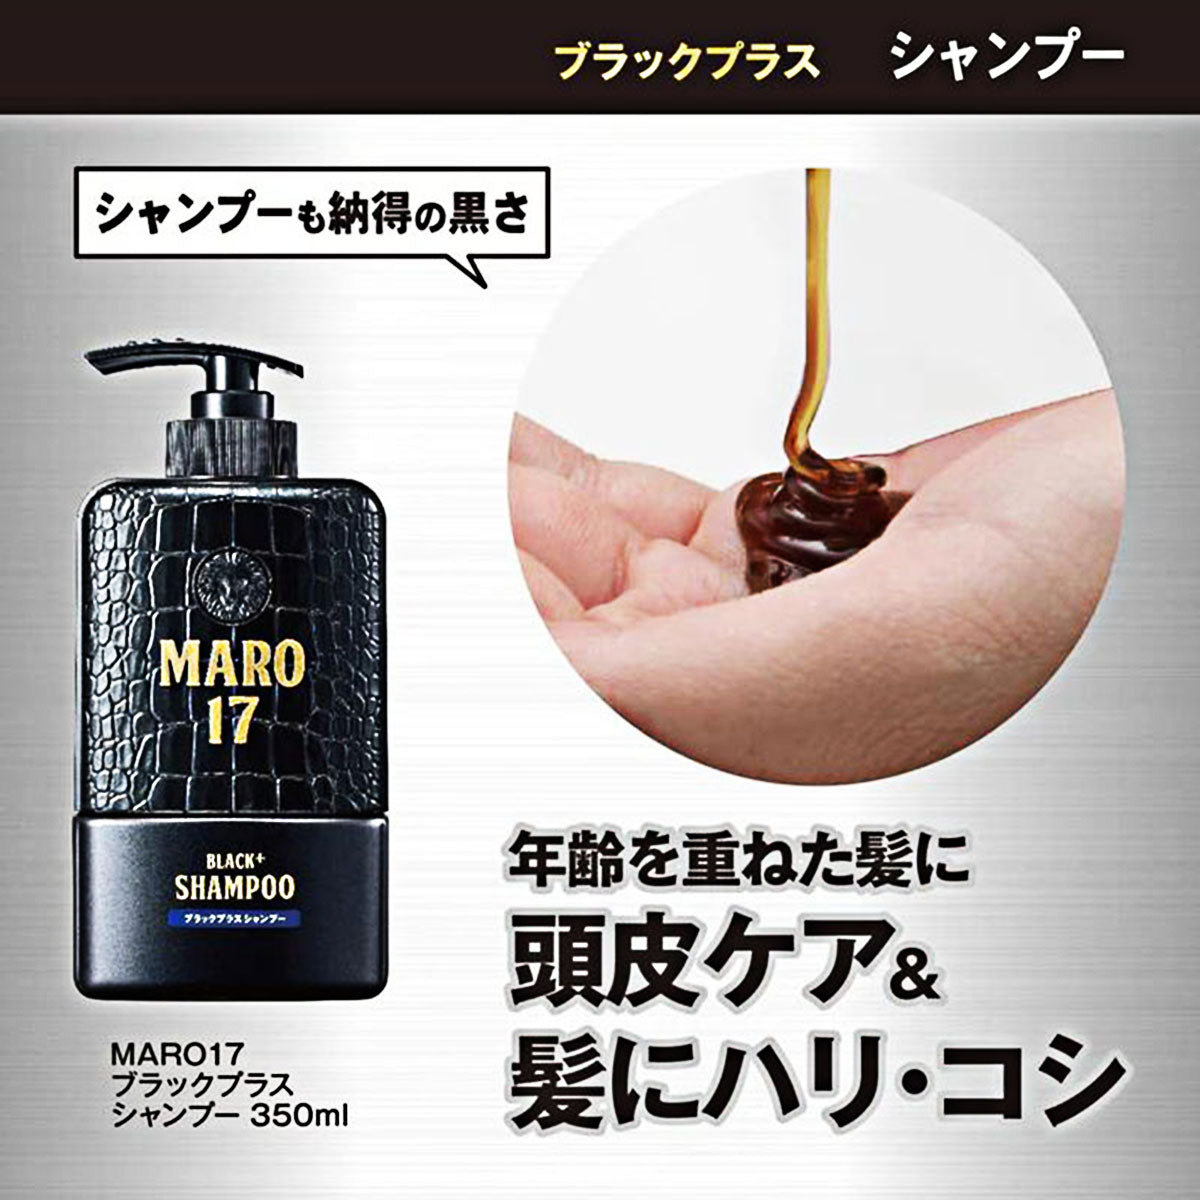 Maro17 Black Plus Shampoo 350ml